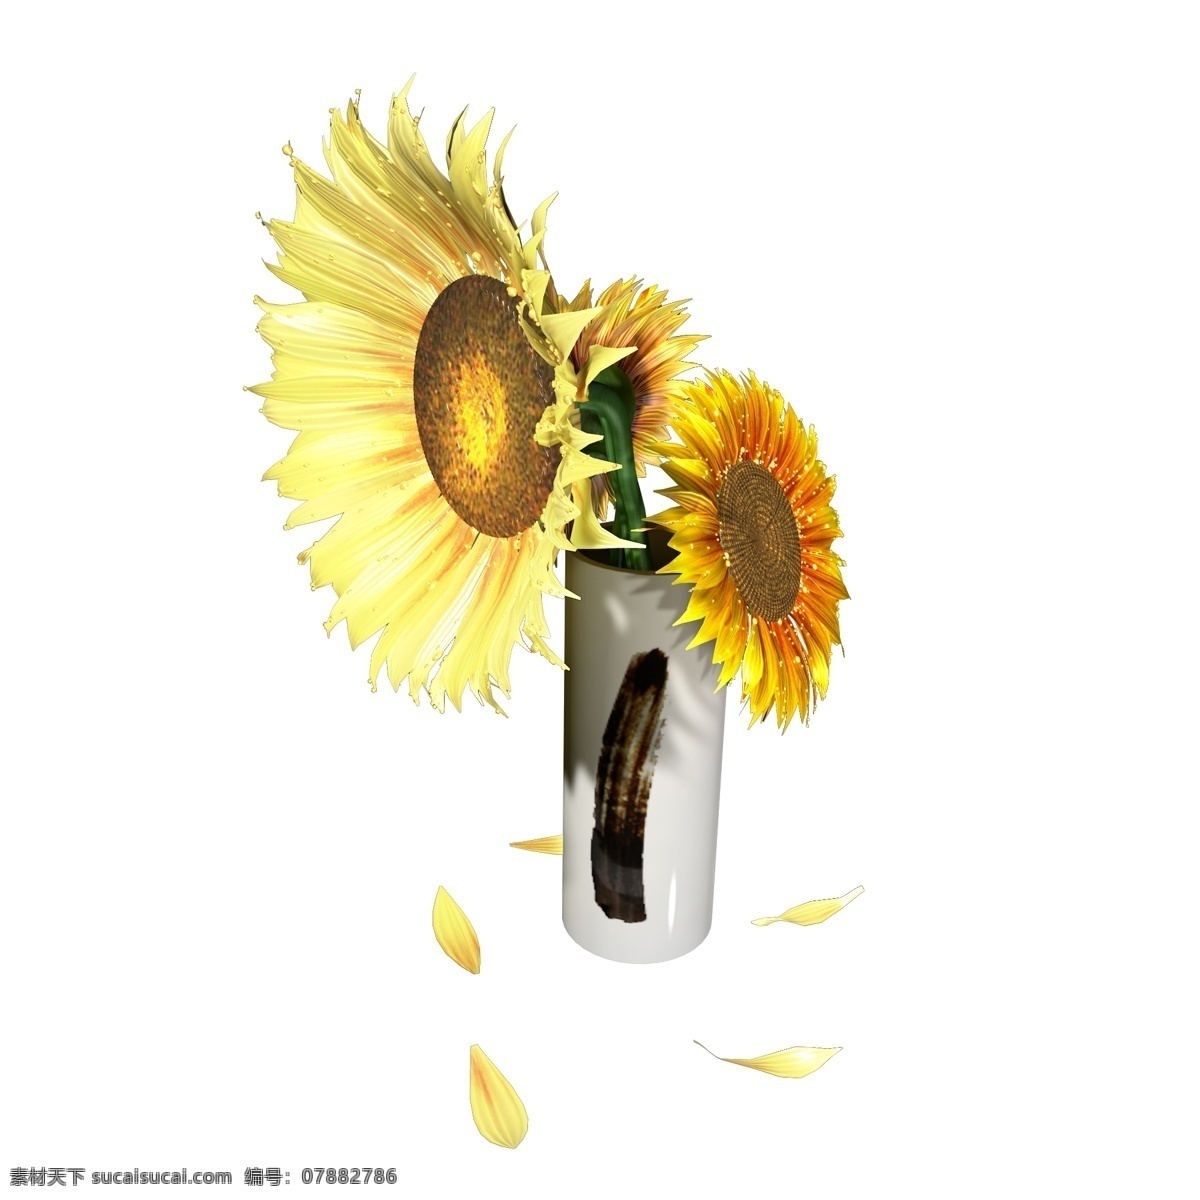 植物类 通用 元素 花瓶 插花 向日葵 立体 写实 简约 中国风 毛笔 白色 黄色 植物 装饰